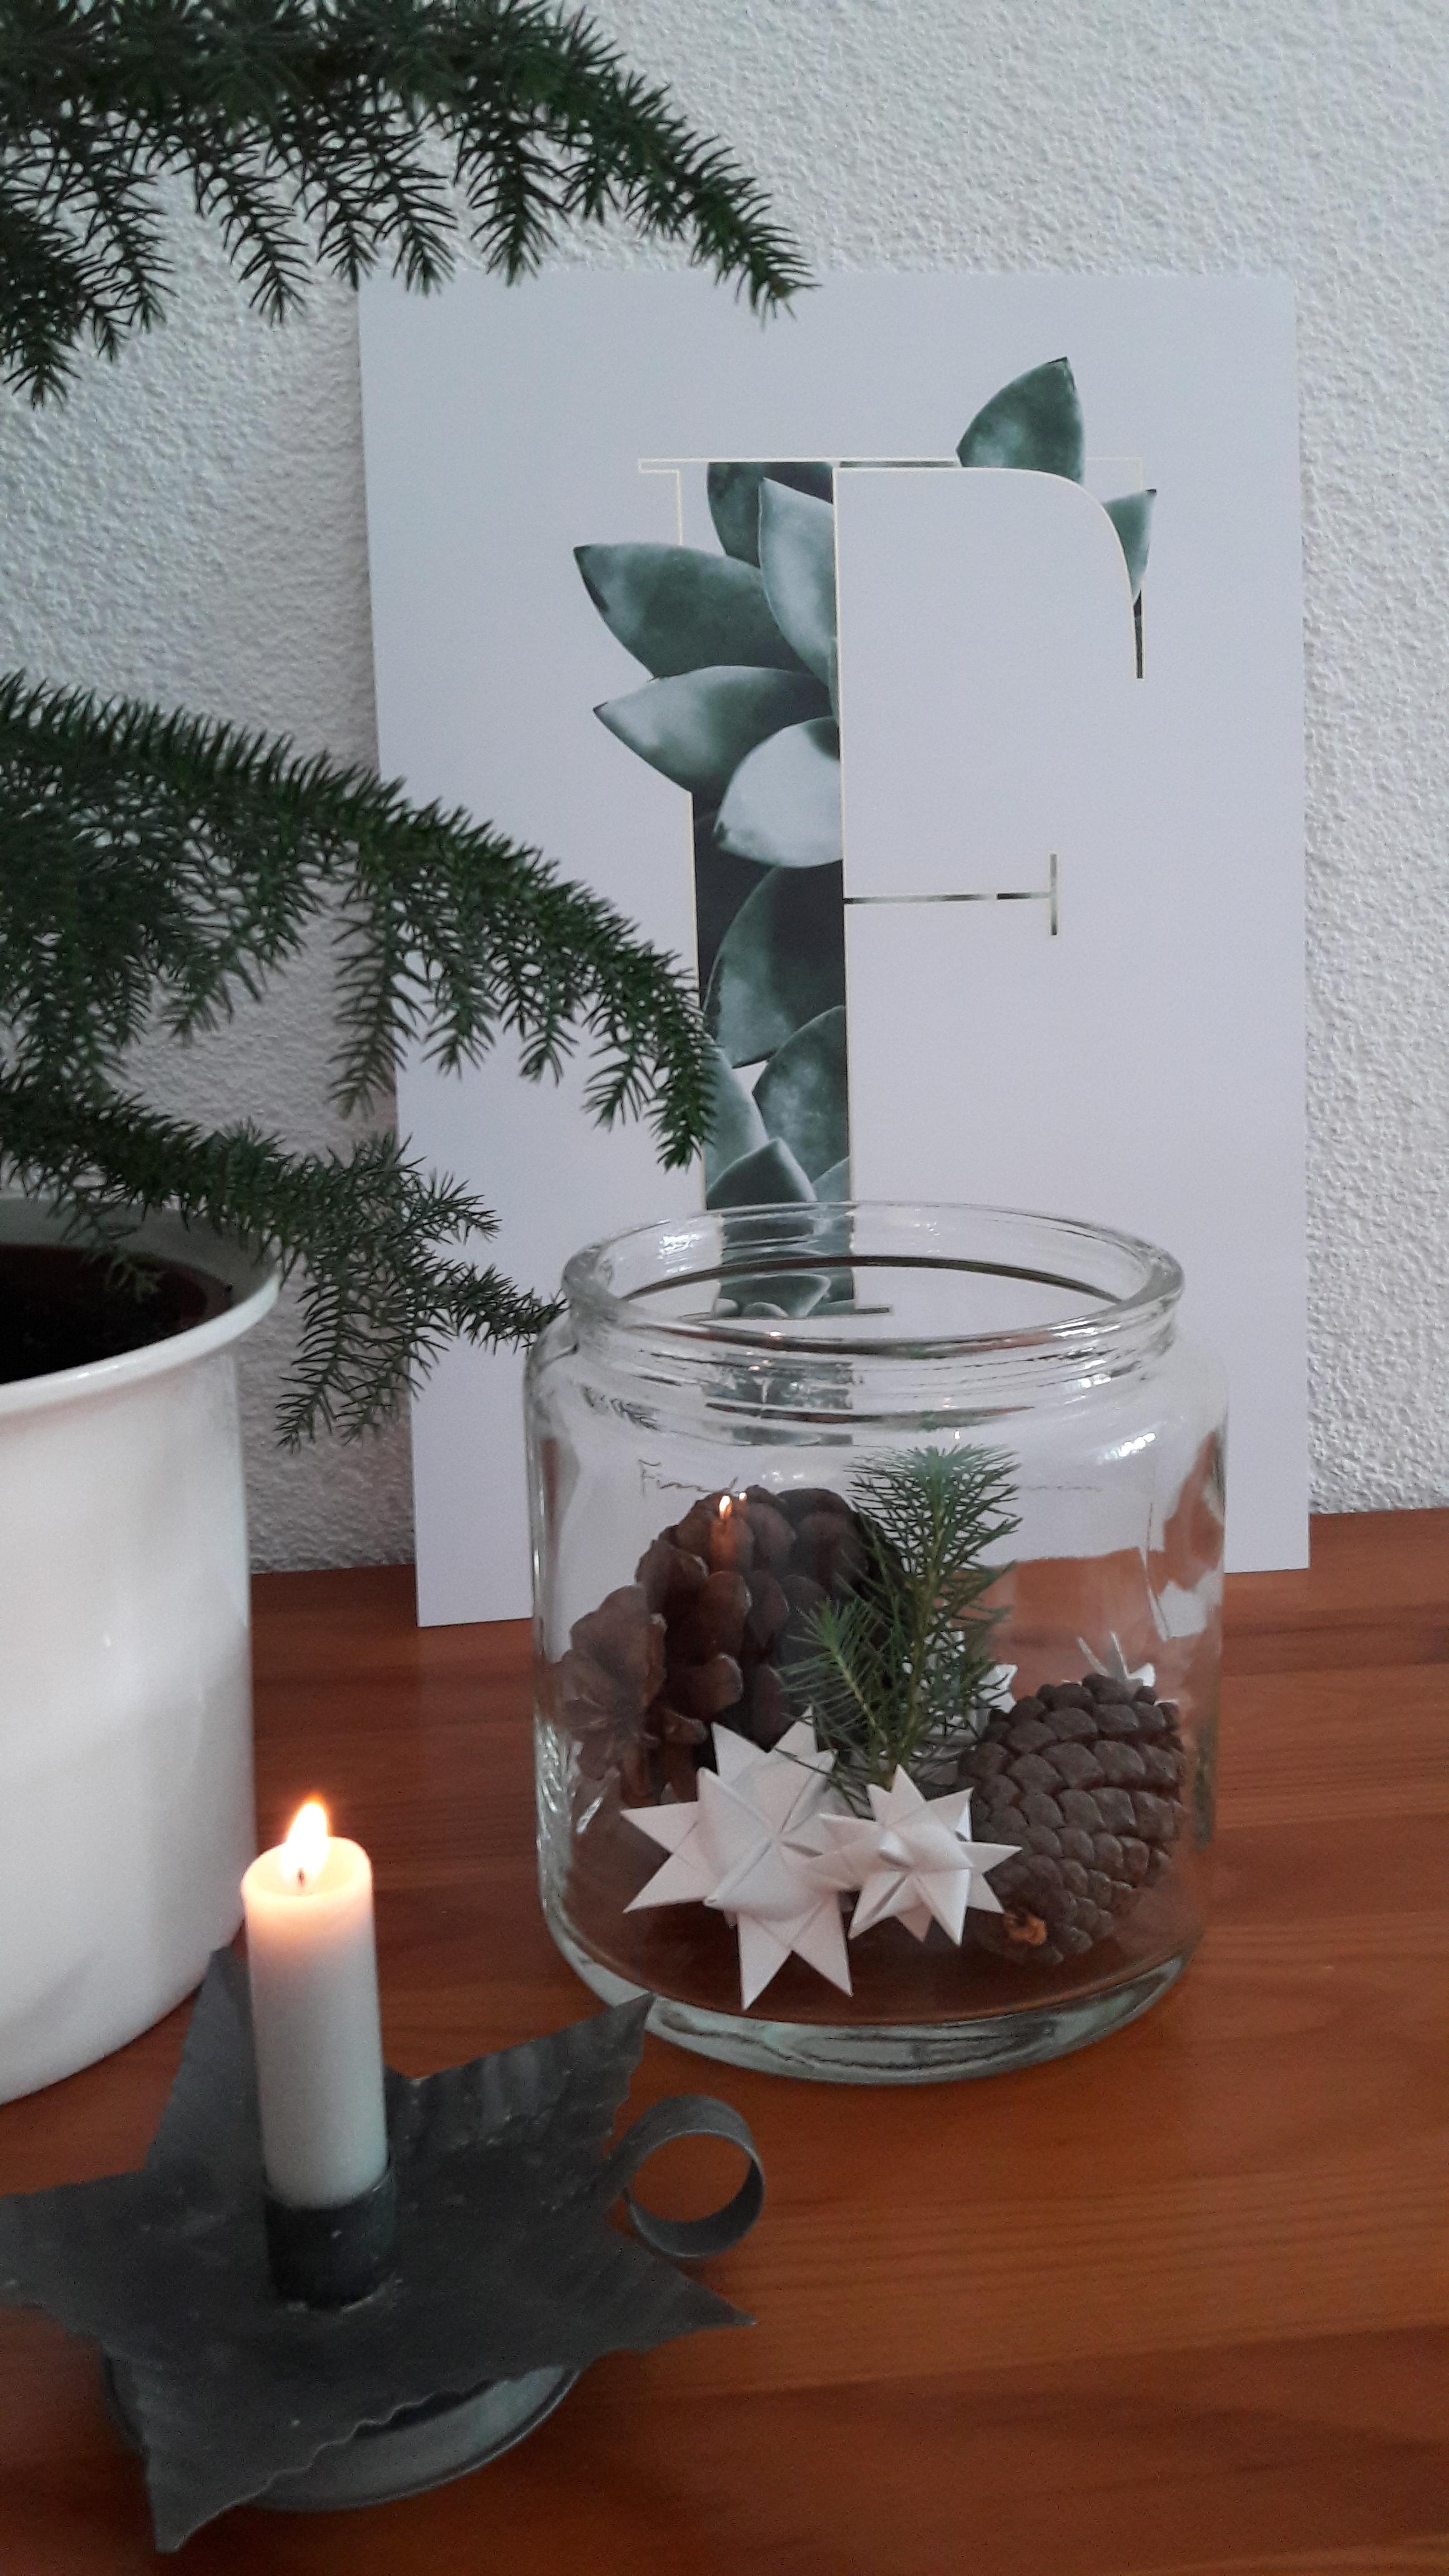 Einen gemütlichen 1. Advent aus dem Weihnachtsland Erzgebirge für alle!🕯
#advent #weihnachtsdeko #hygge #stern #kerze #zapfen